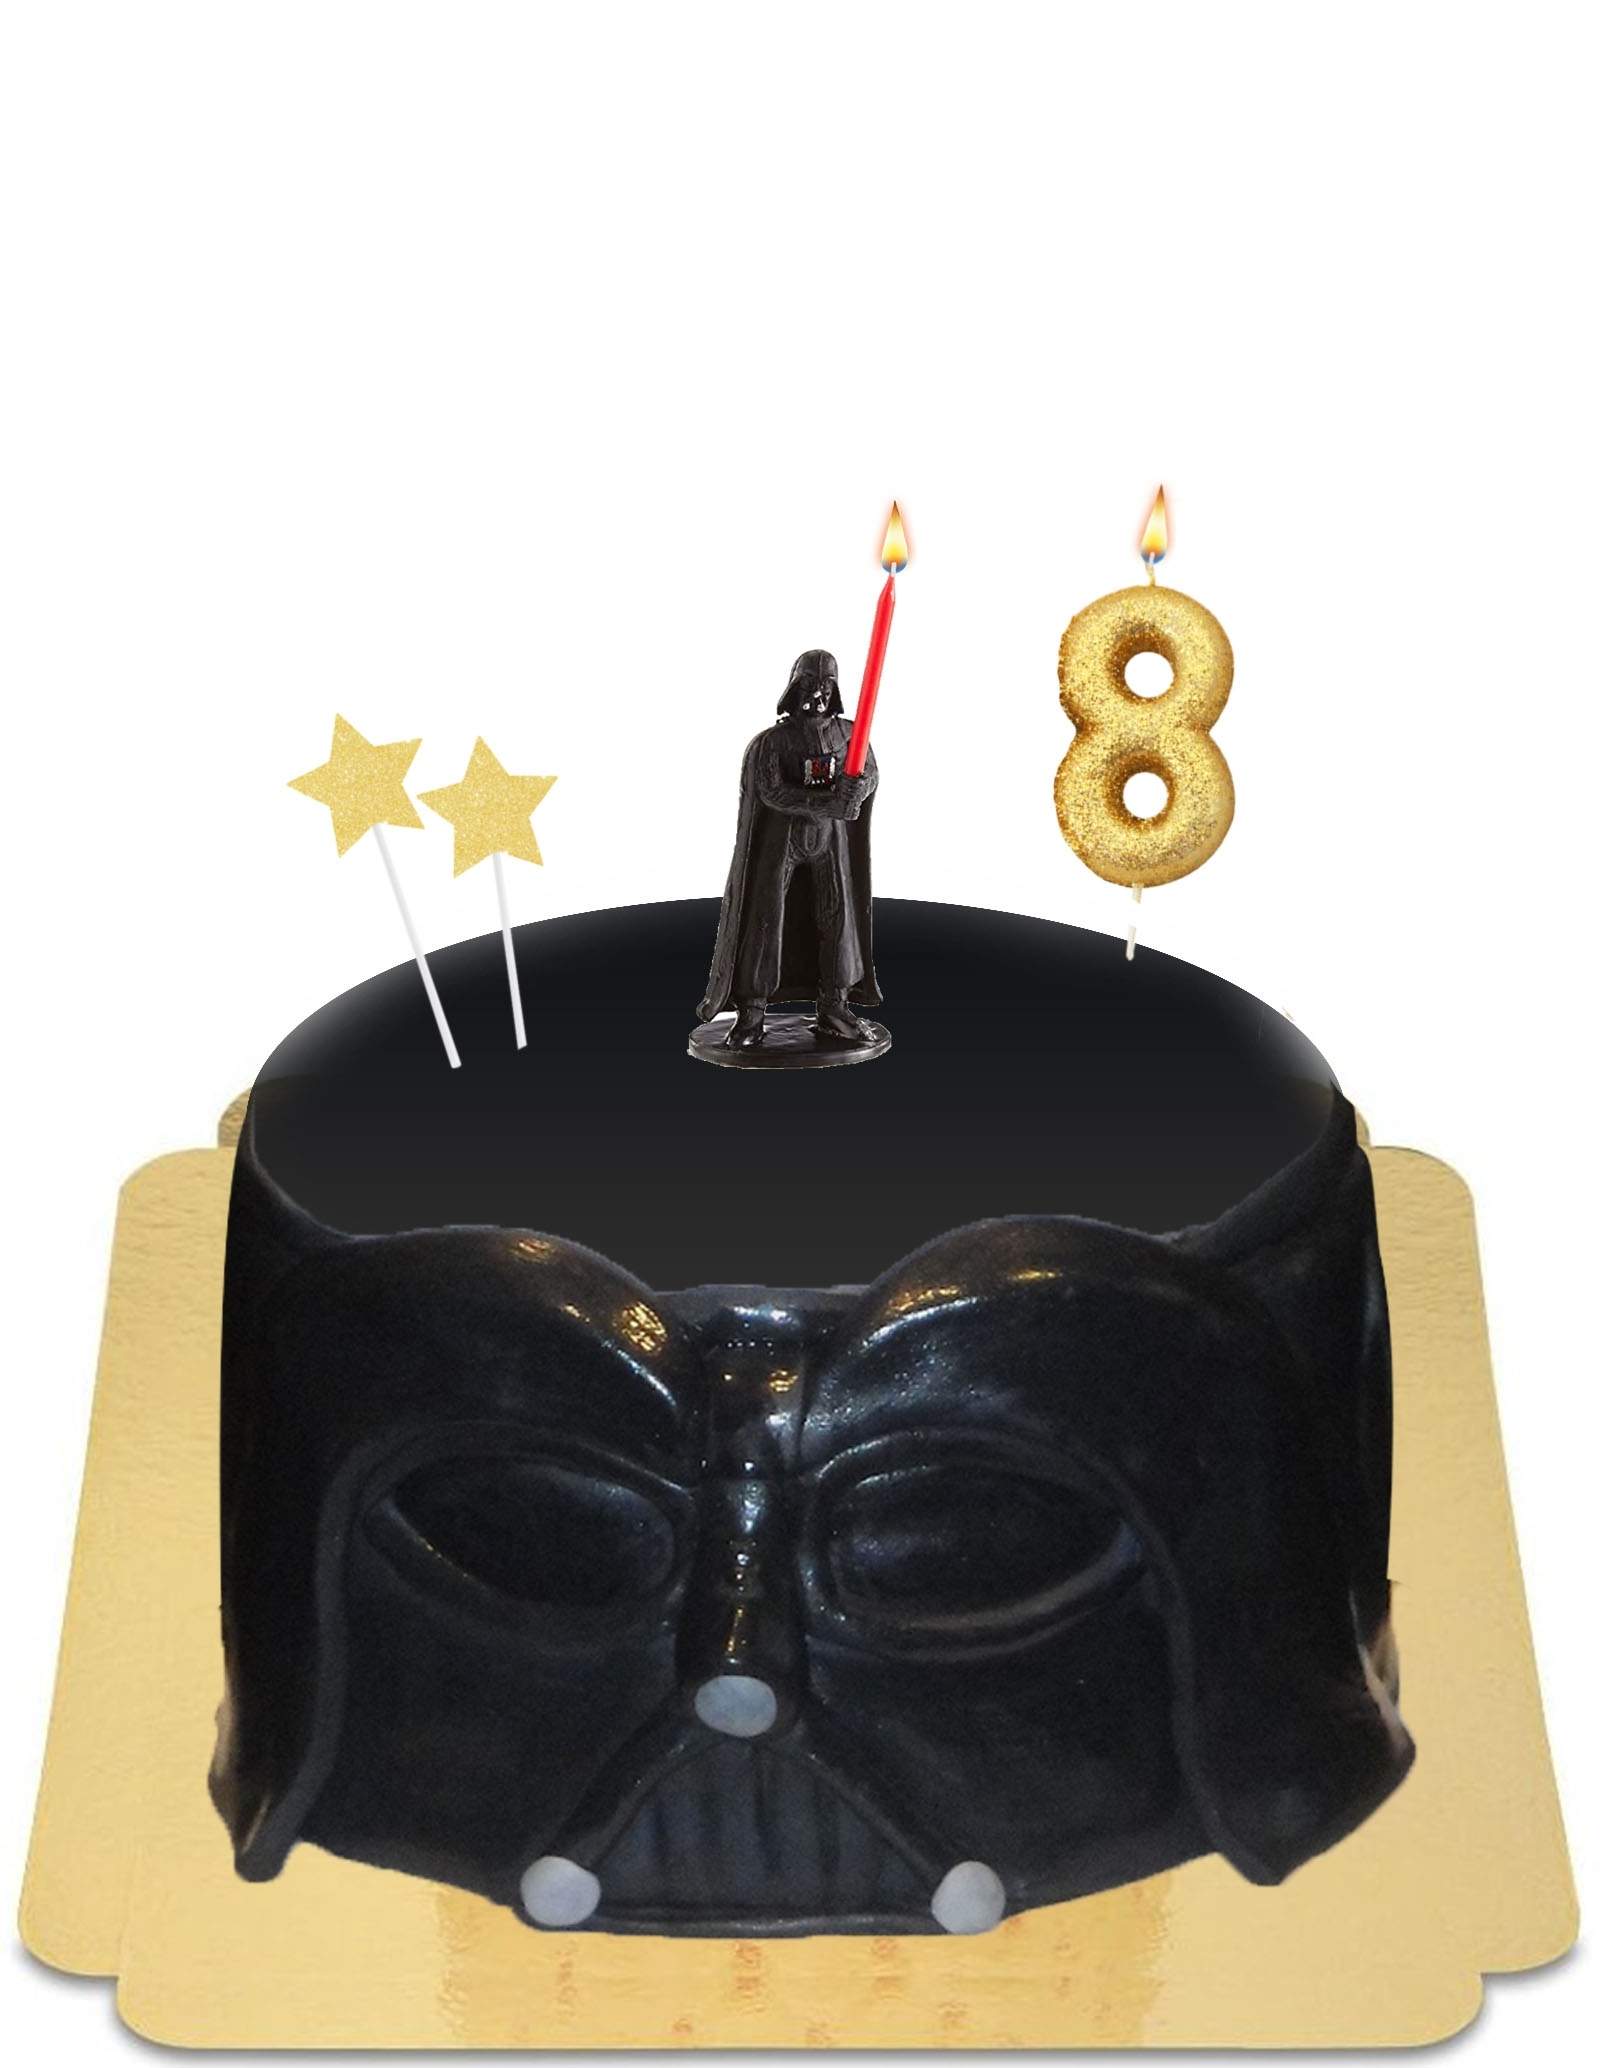 Goedaardig Reinig de vloer seks Star Wars Darth Vader cake met vegan kaars, glutenvrij